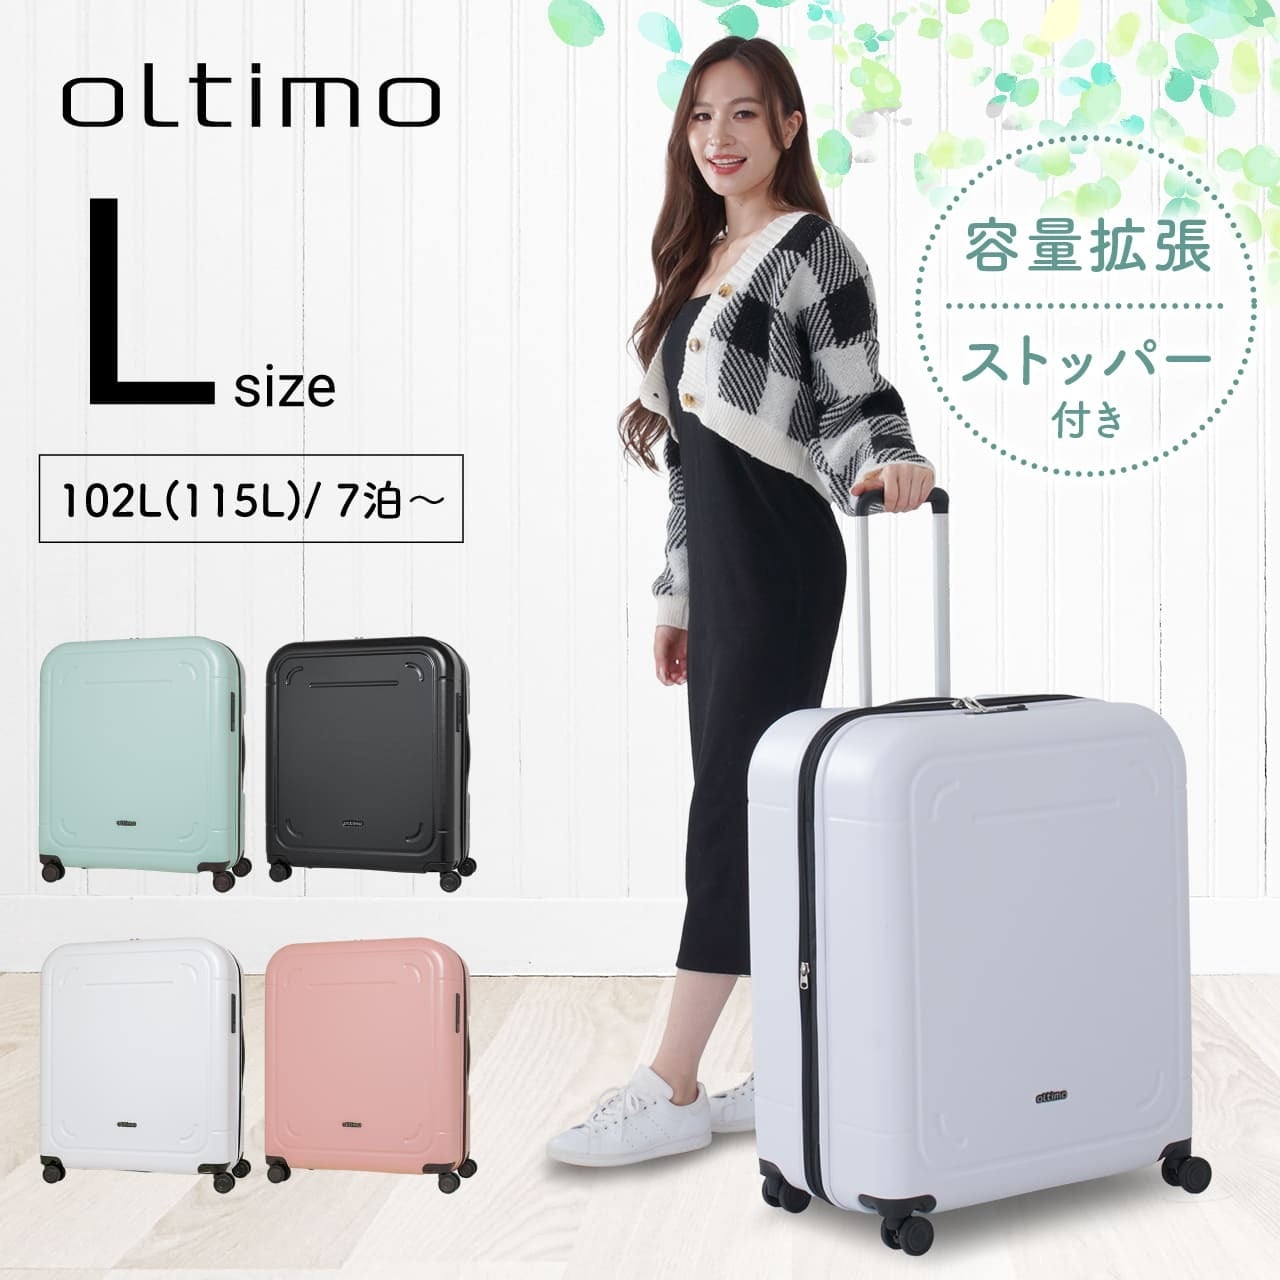 oltimo オルティモ スーツケース キャリーケース Lサイズ 100L 拡張